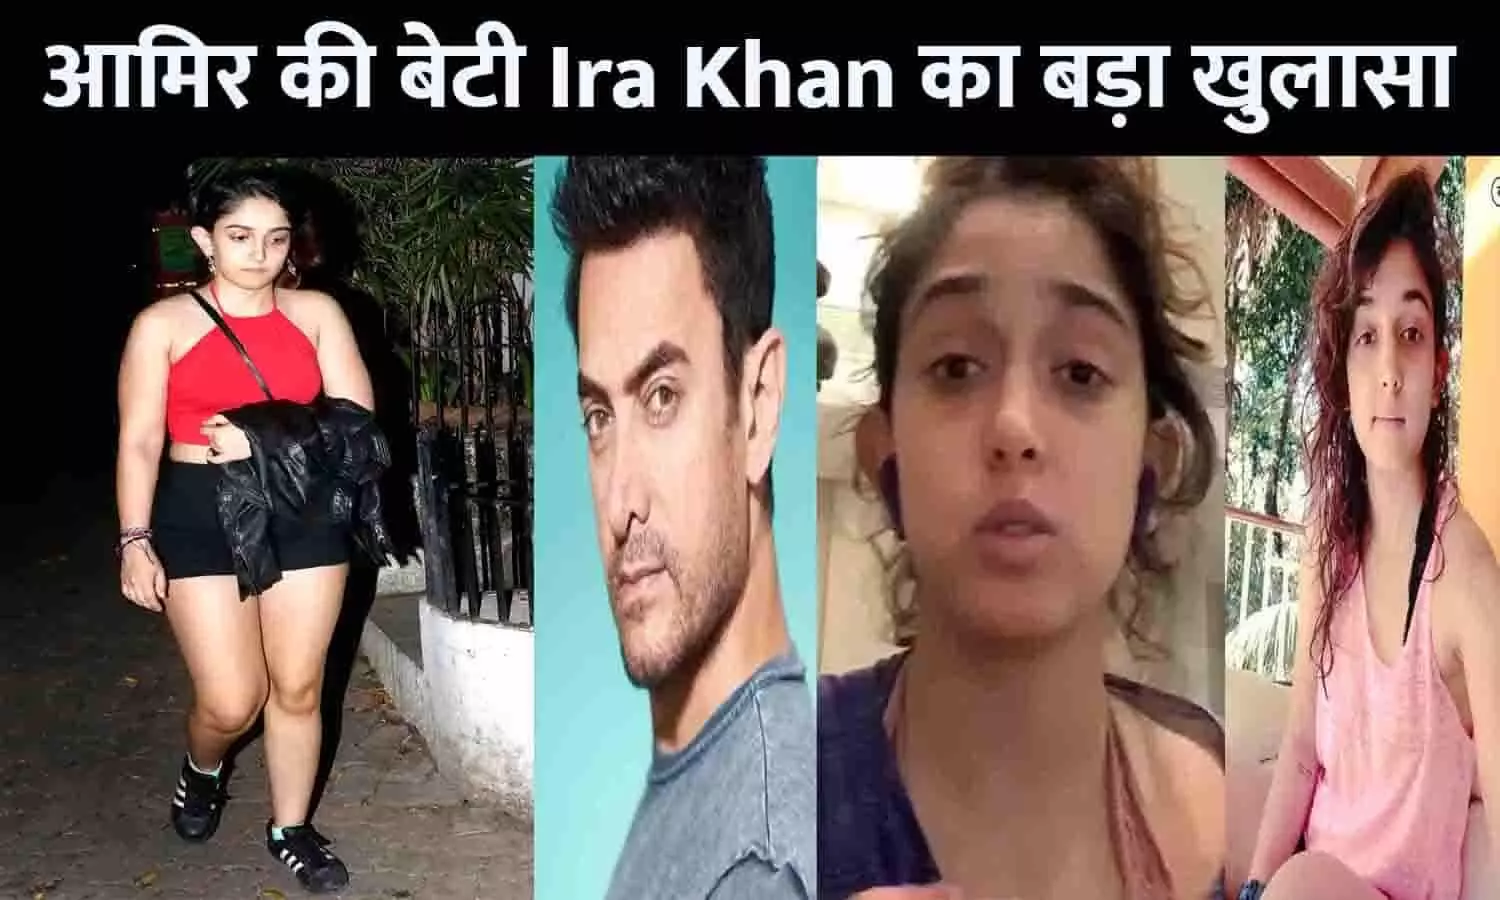 14 की उम्र में आमिर की बेटी Ira Khan के साथ परिवार का बुजुर्ग व्यक्ति करता था गंदी हरकत, कहा- मेरे साथ क्या हो रहा था..